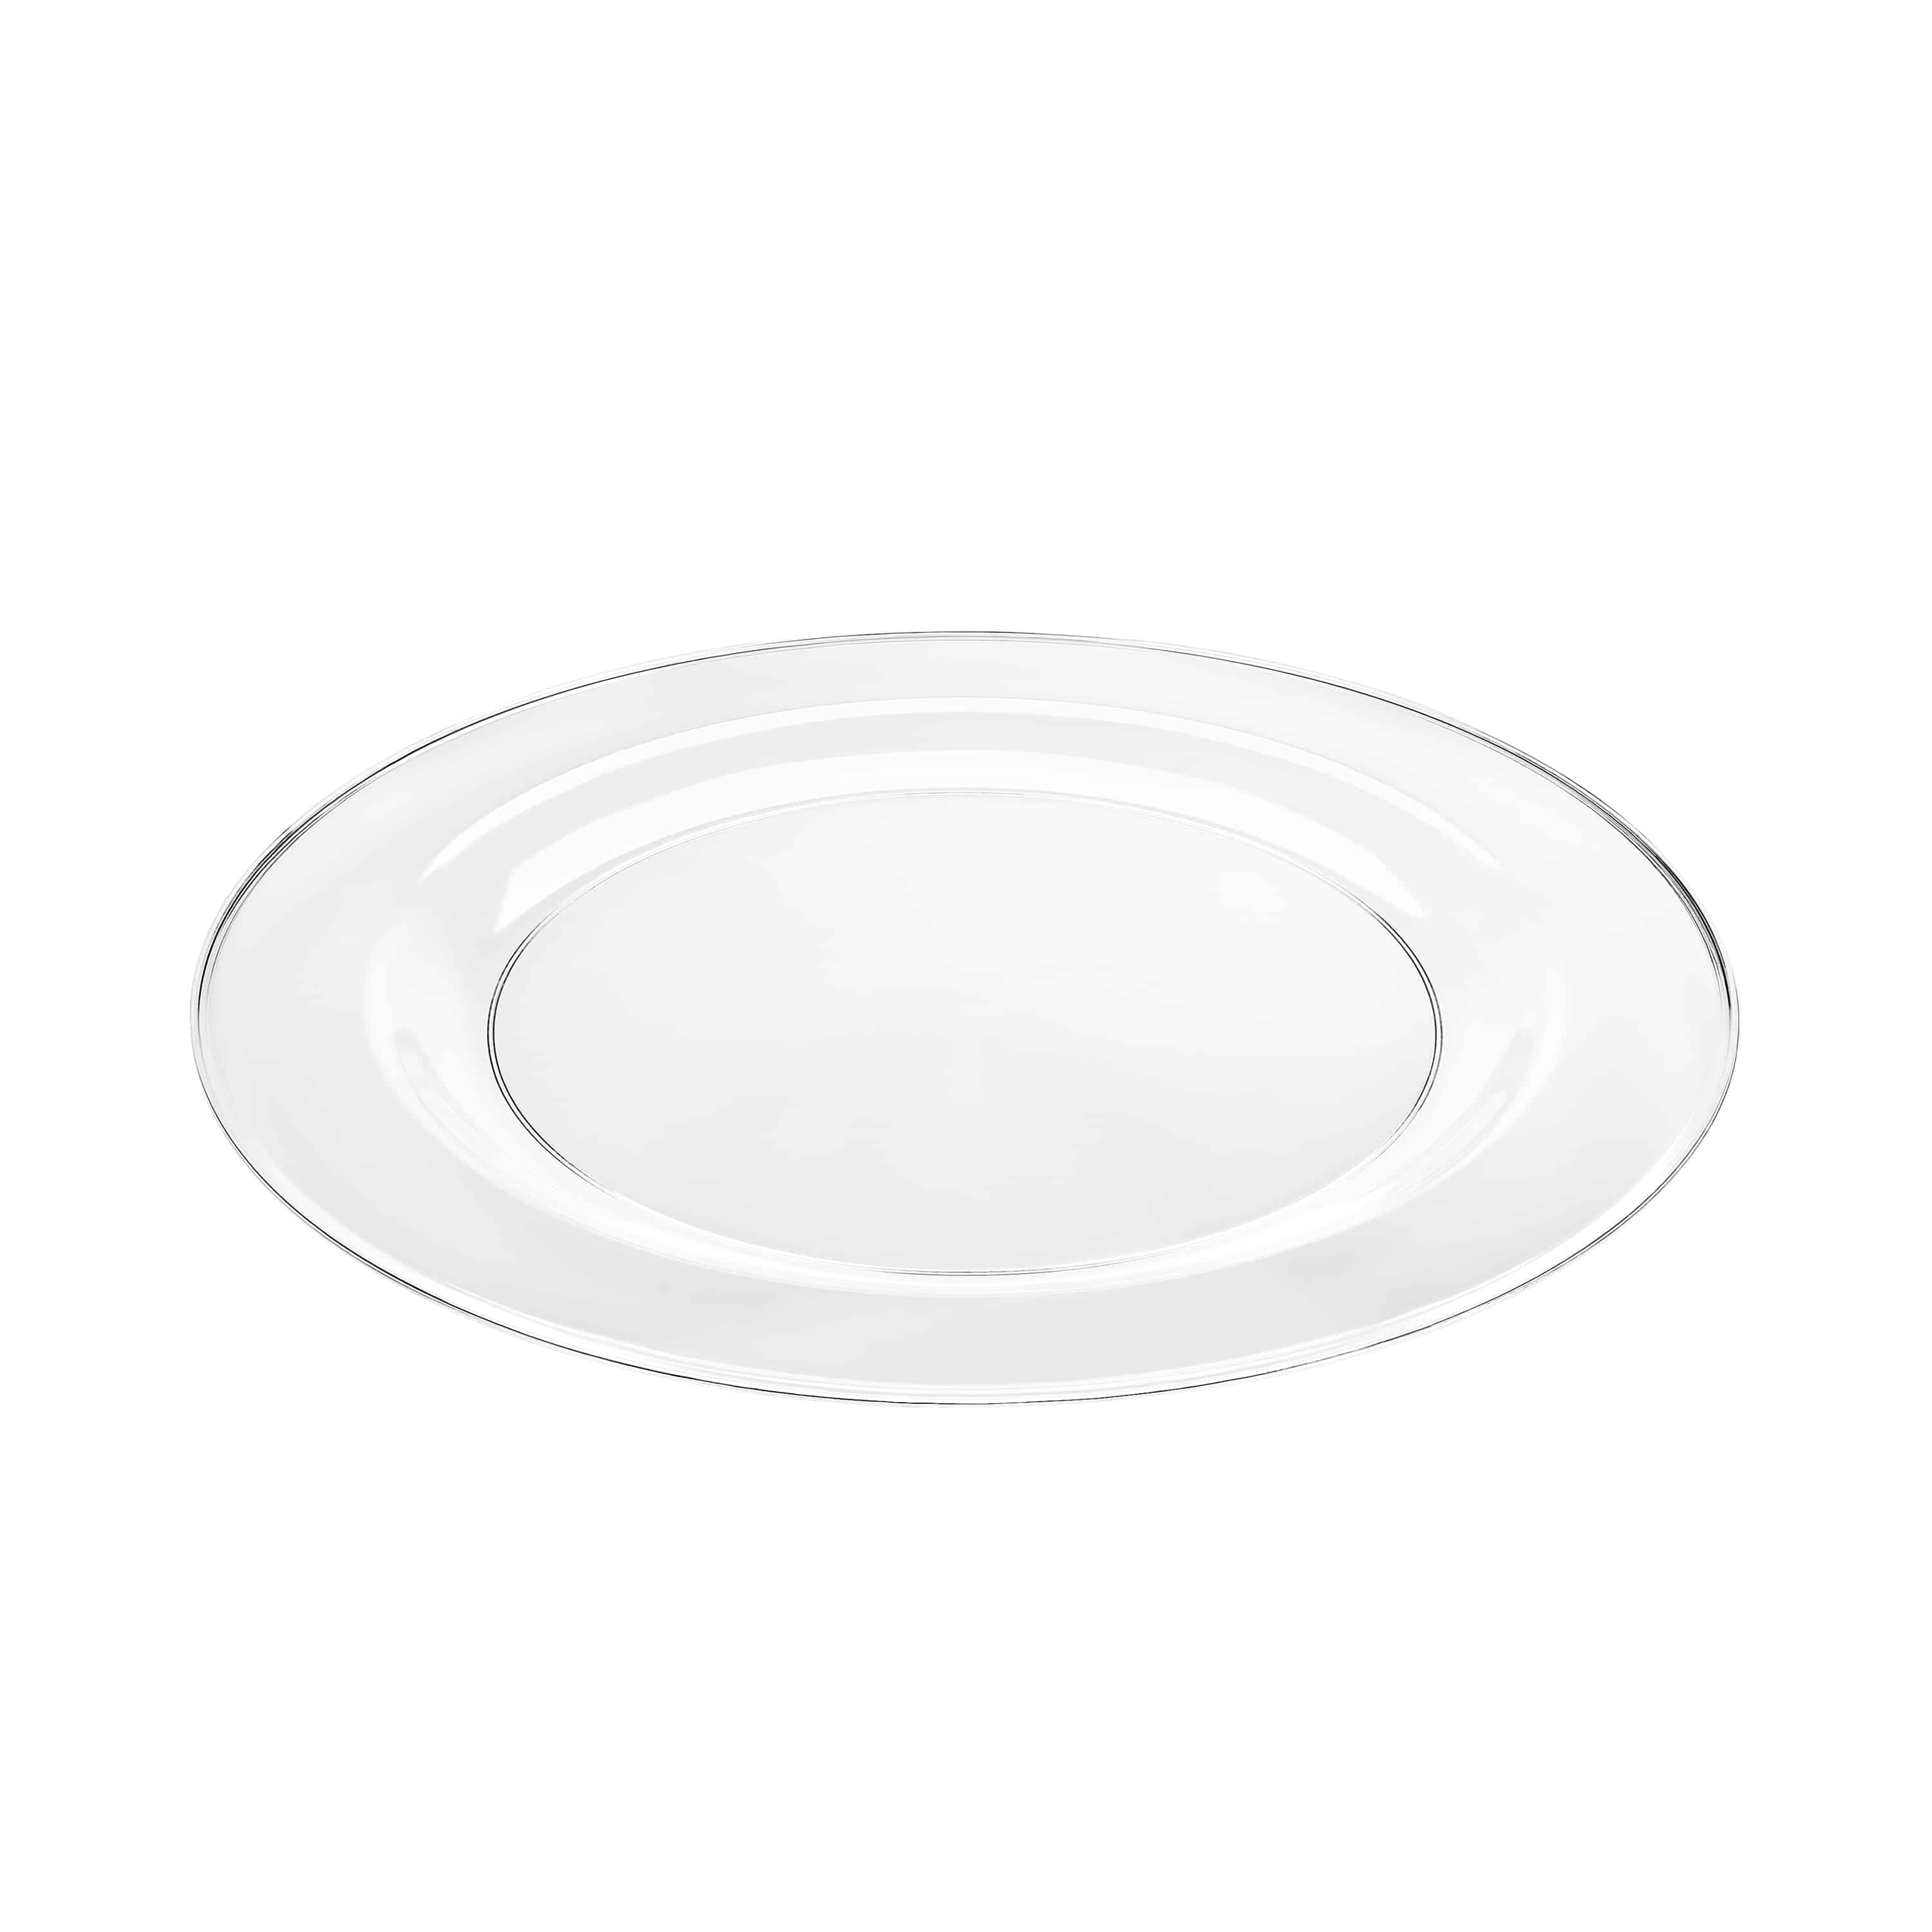 Magnificence Premium Plastic Round Dinnerware